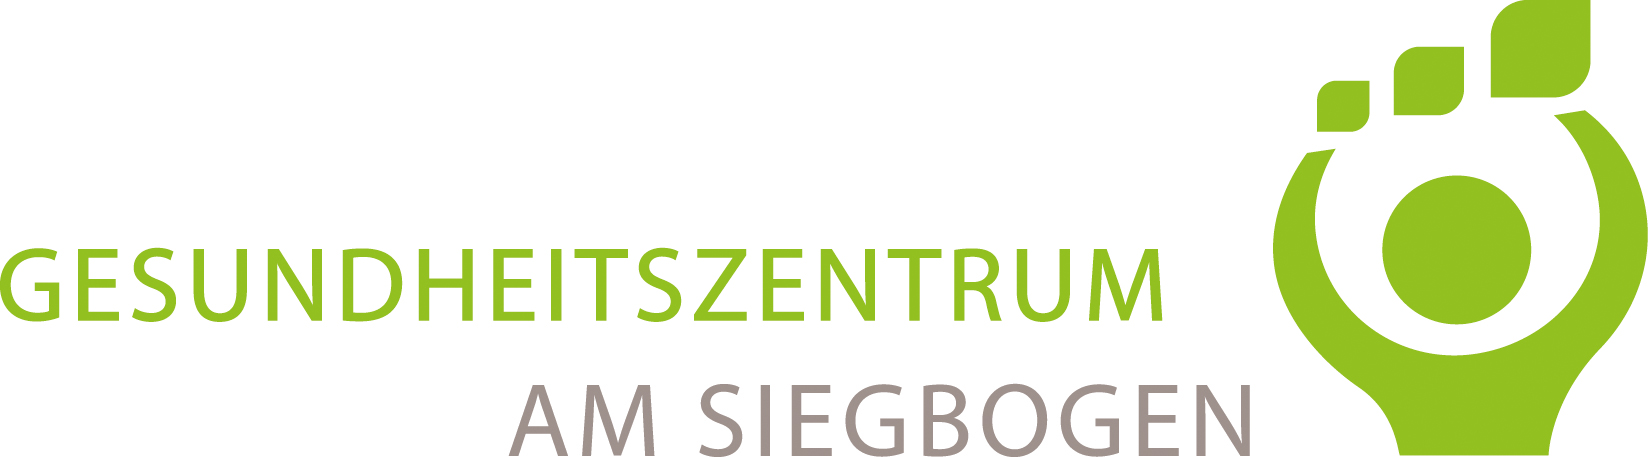 Gesundheitszentrum am Siegbogen Logo